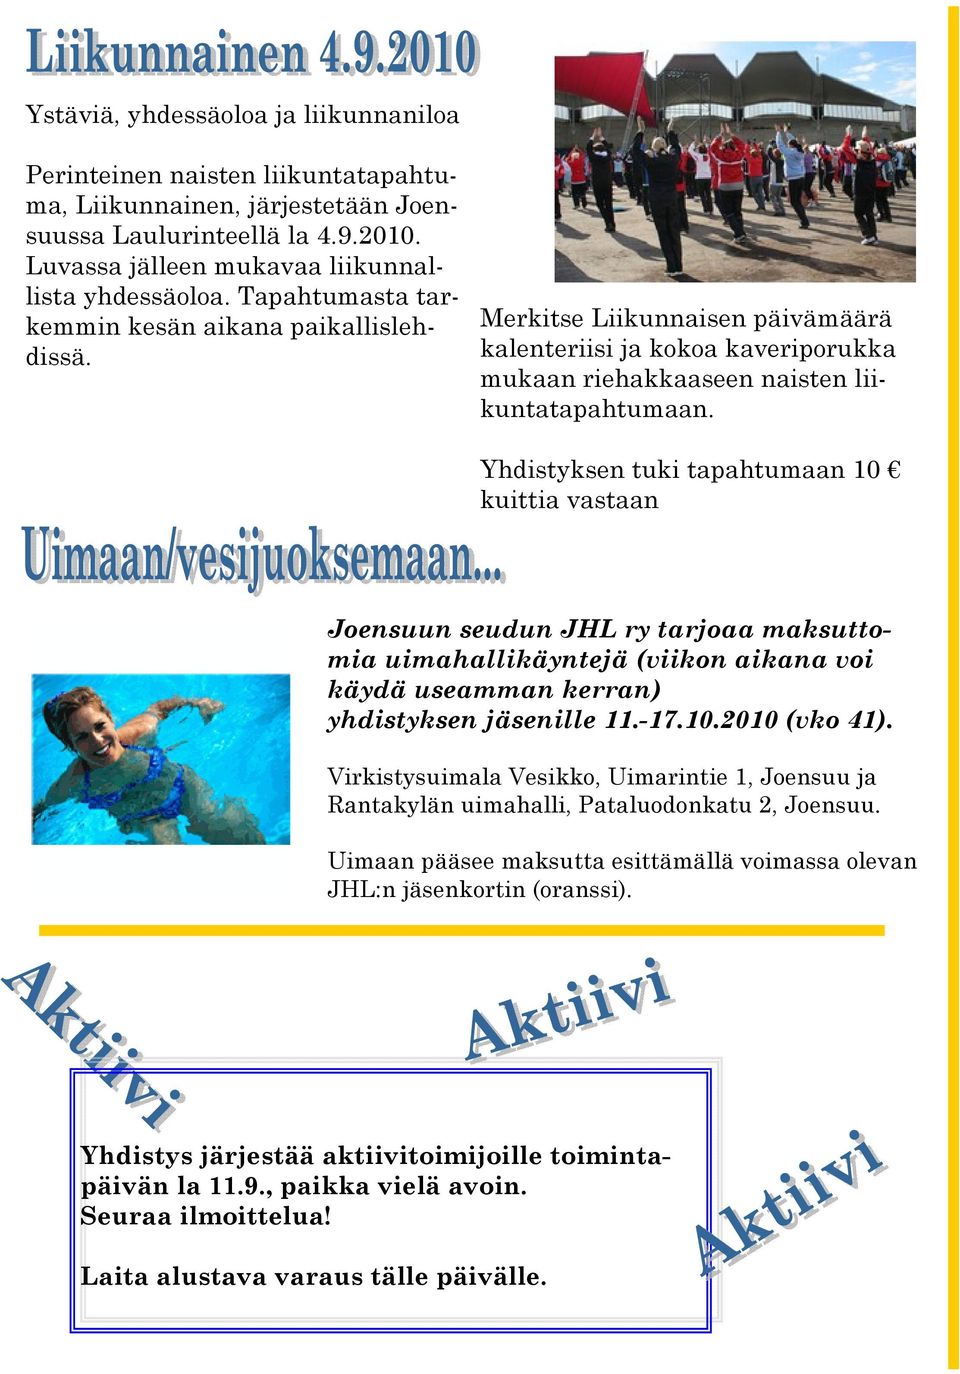 Yhdistyksen tuki tapahtumaan 10 kuittia vastaan Joensuun seudun JHL ry tarjoaa maksuttomia uimahallikäyntejä (viikon aikana voi käydä useamman kerran) yhdistyksen jäsenille 11.-17.10.2010 (vko 41).